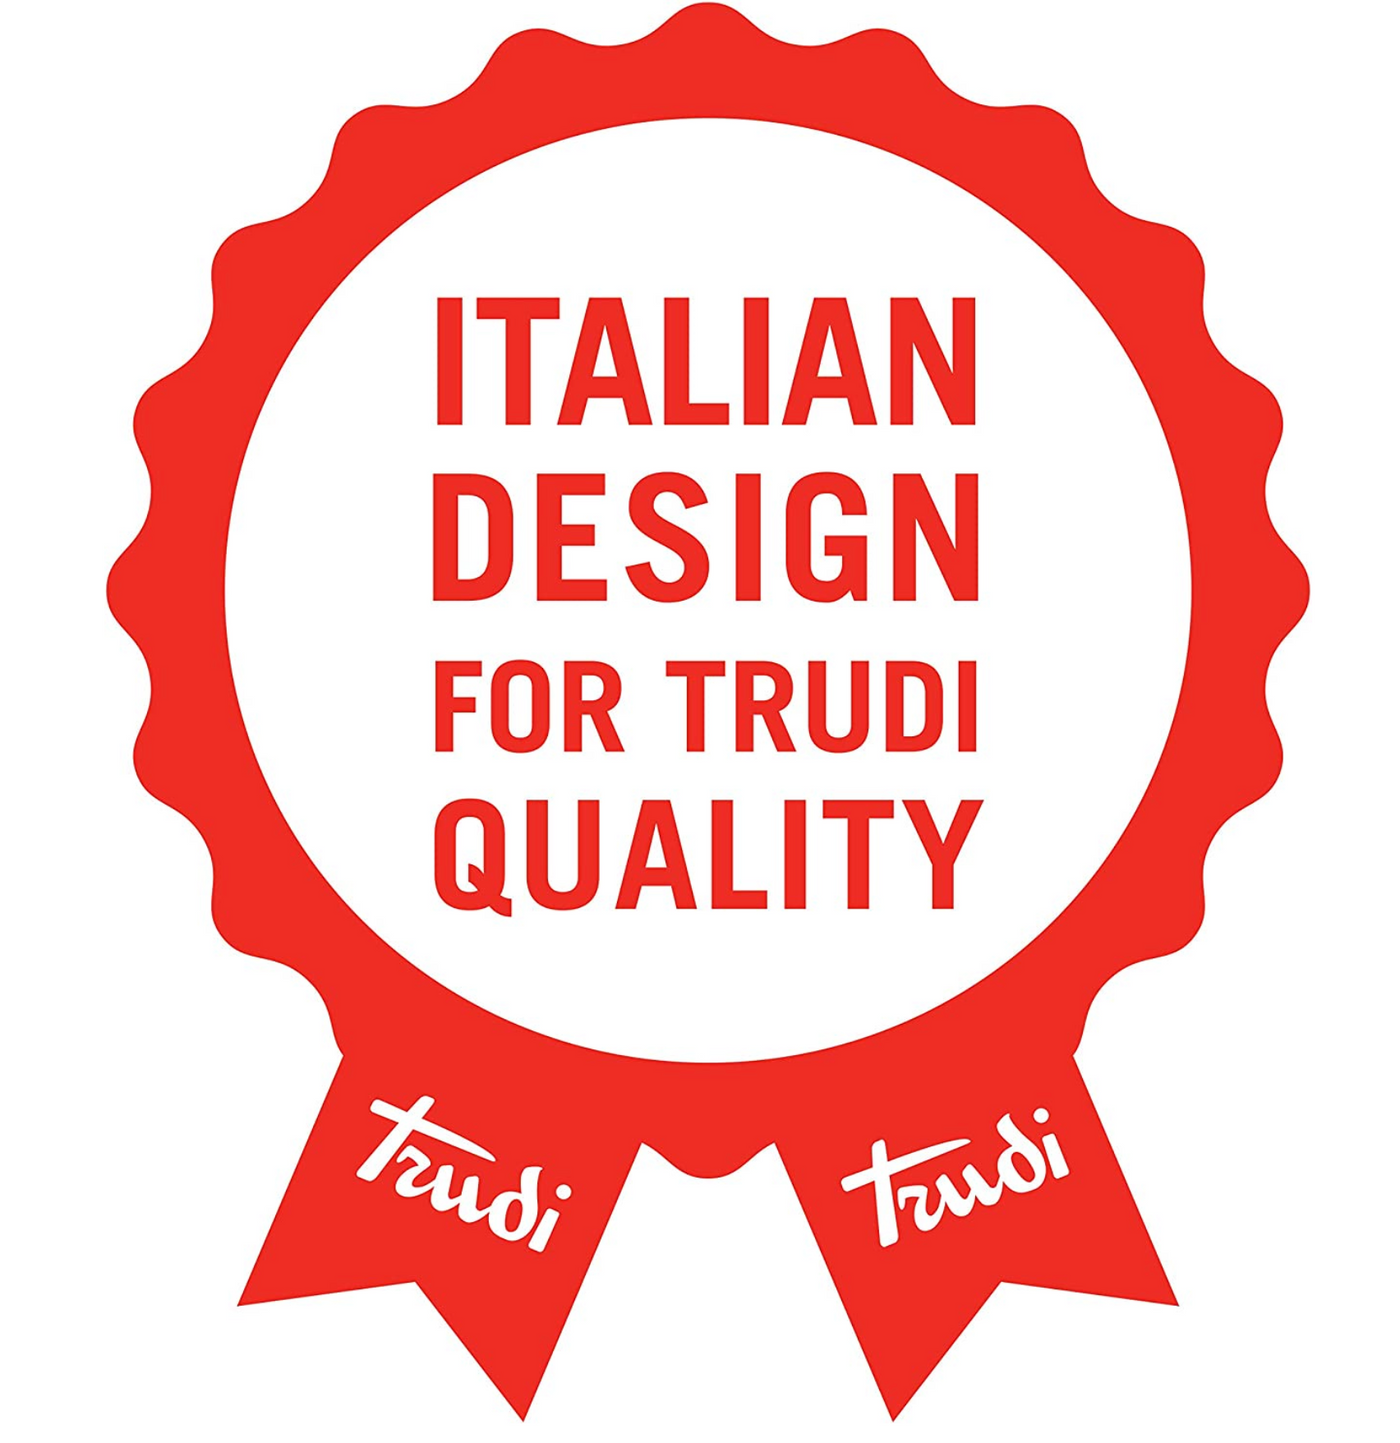 Trudi Bear Plush Love Box Gift Set 6.3 inch Exclusive Italian Designed New